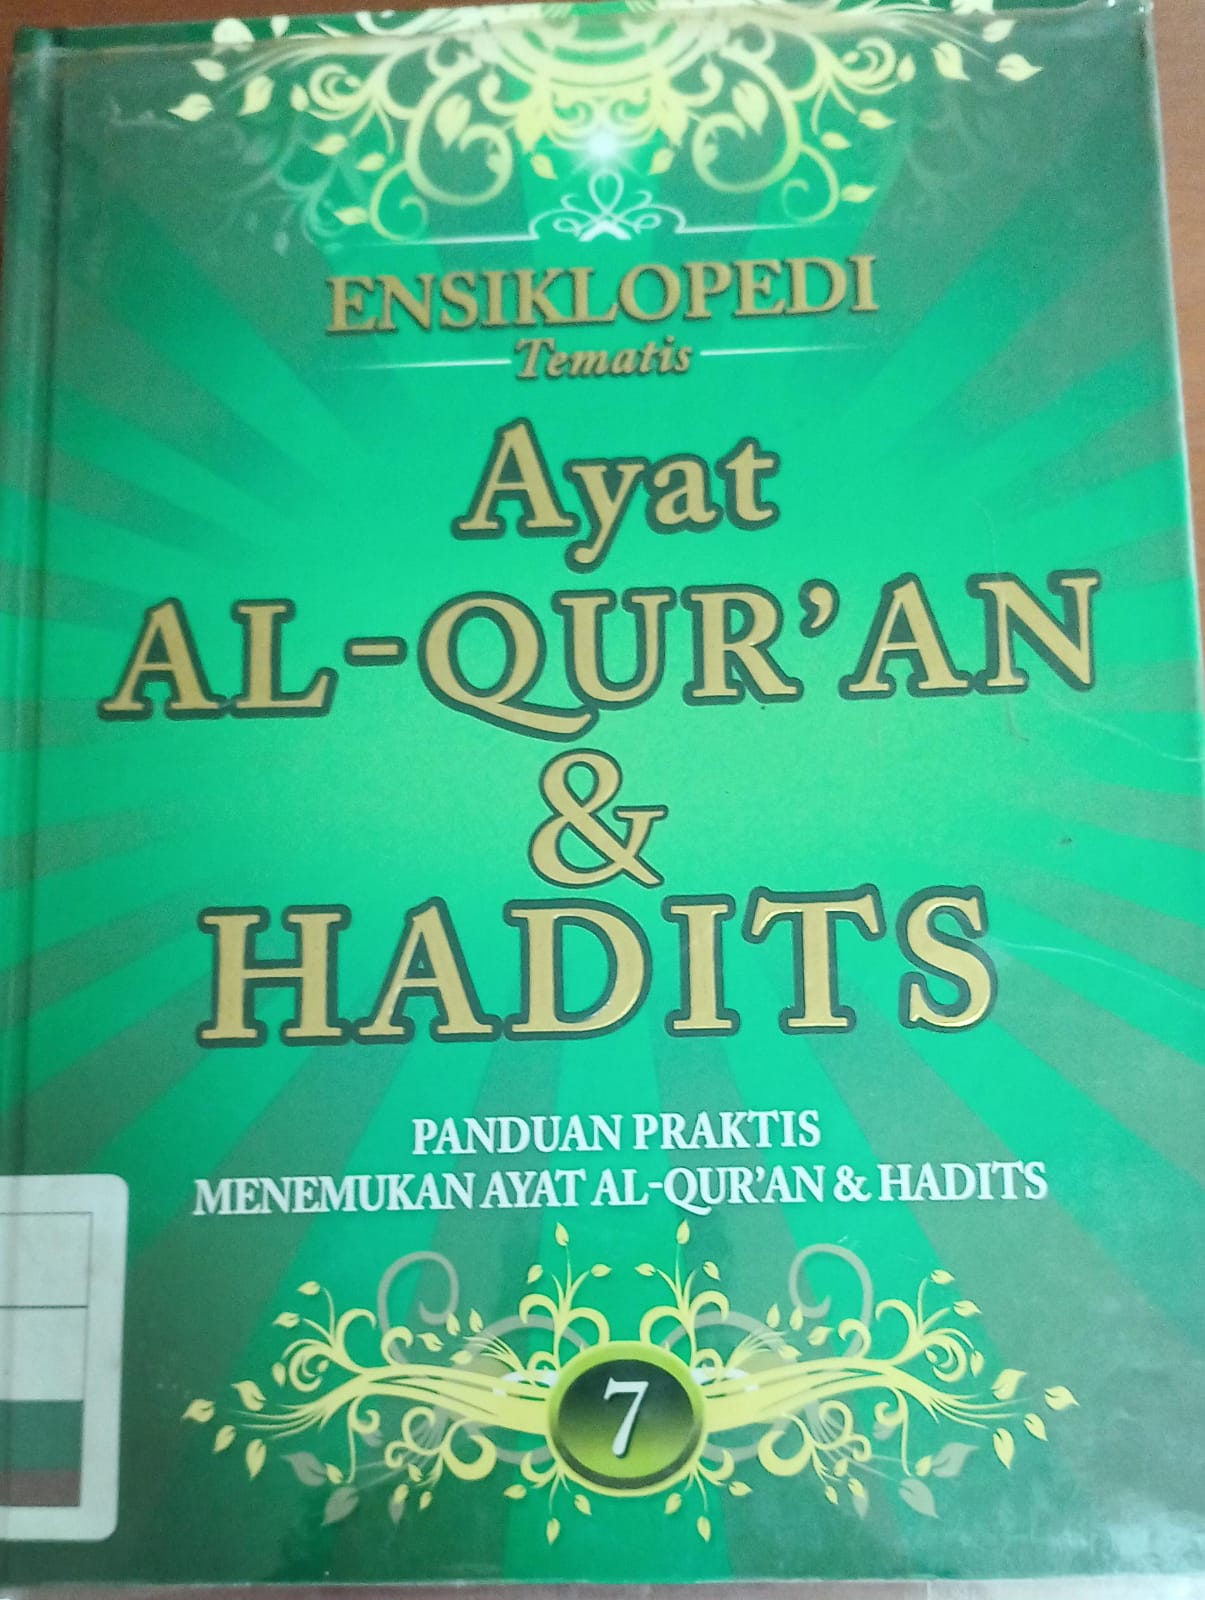 Ensiklopedi tematis ayat al-qur'an dan hadits jilid 7, :  Panduan praktis menemukan ayat al-qur'an & hadits